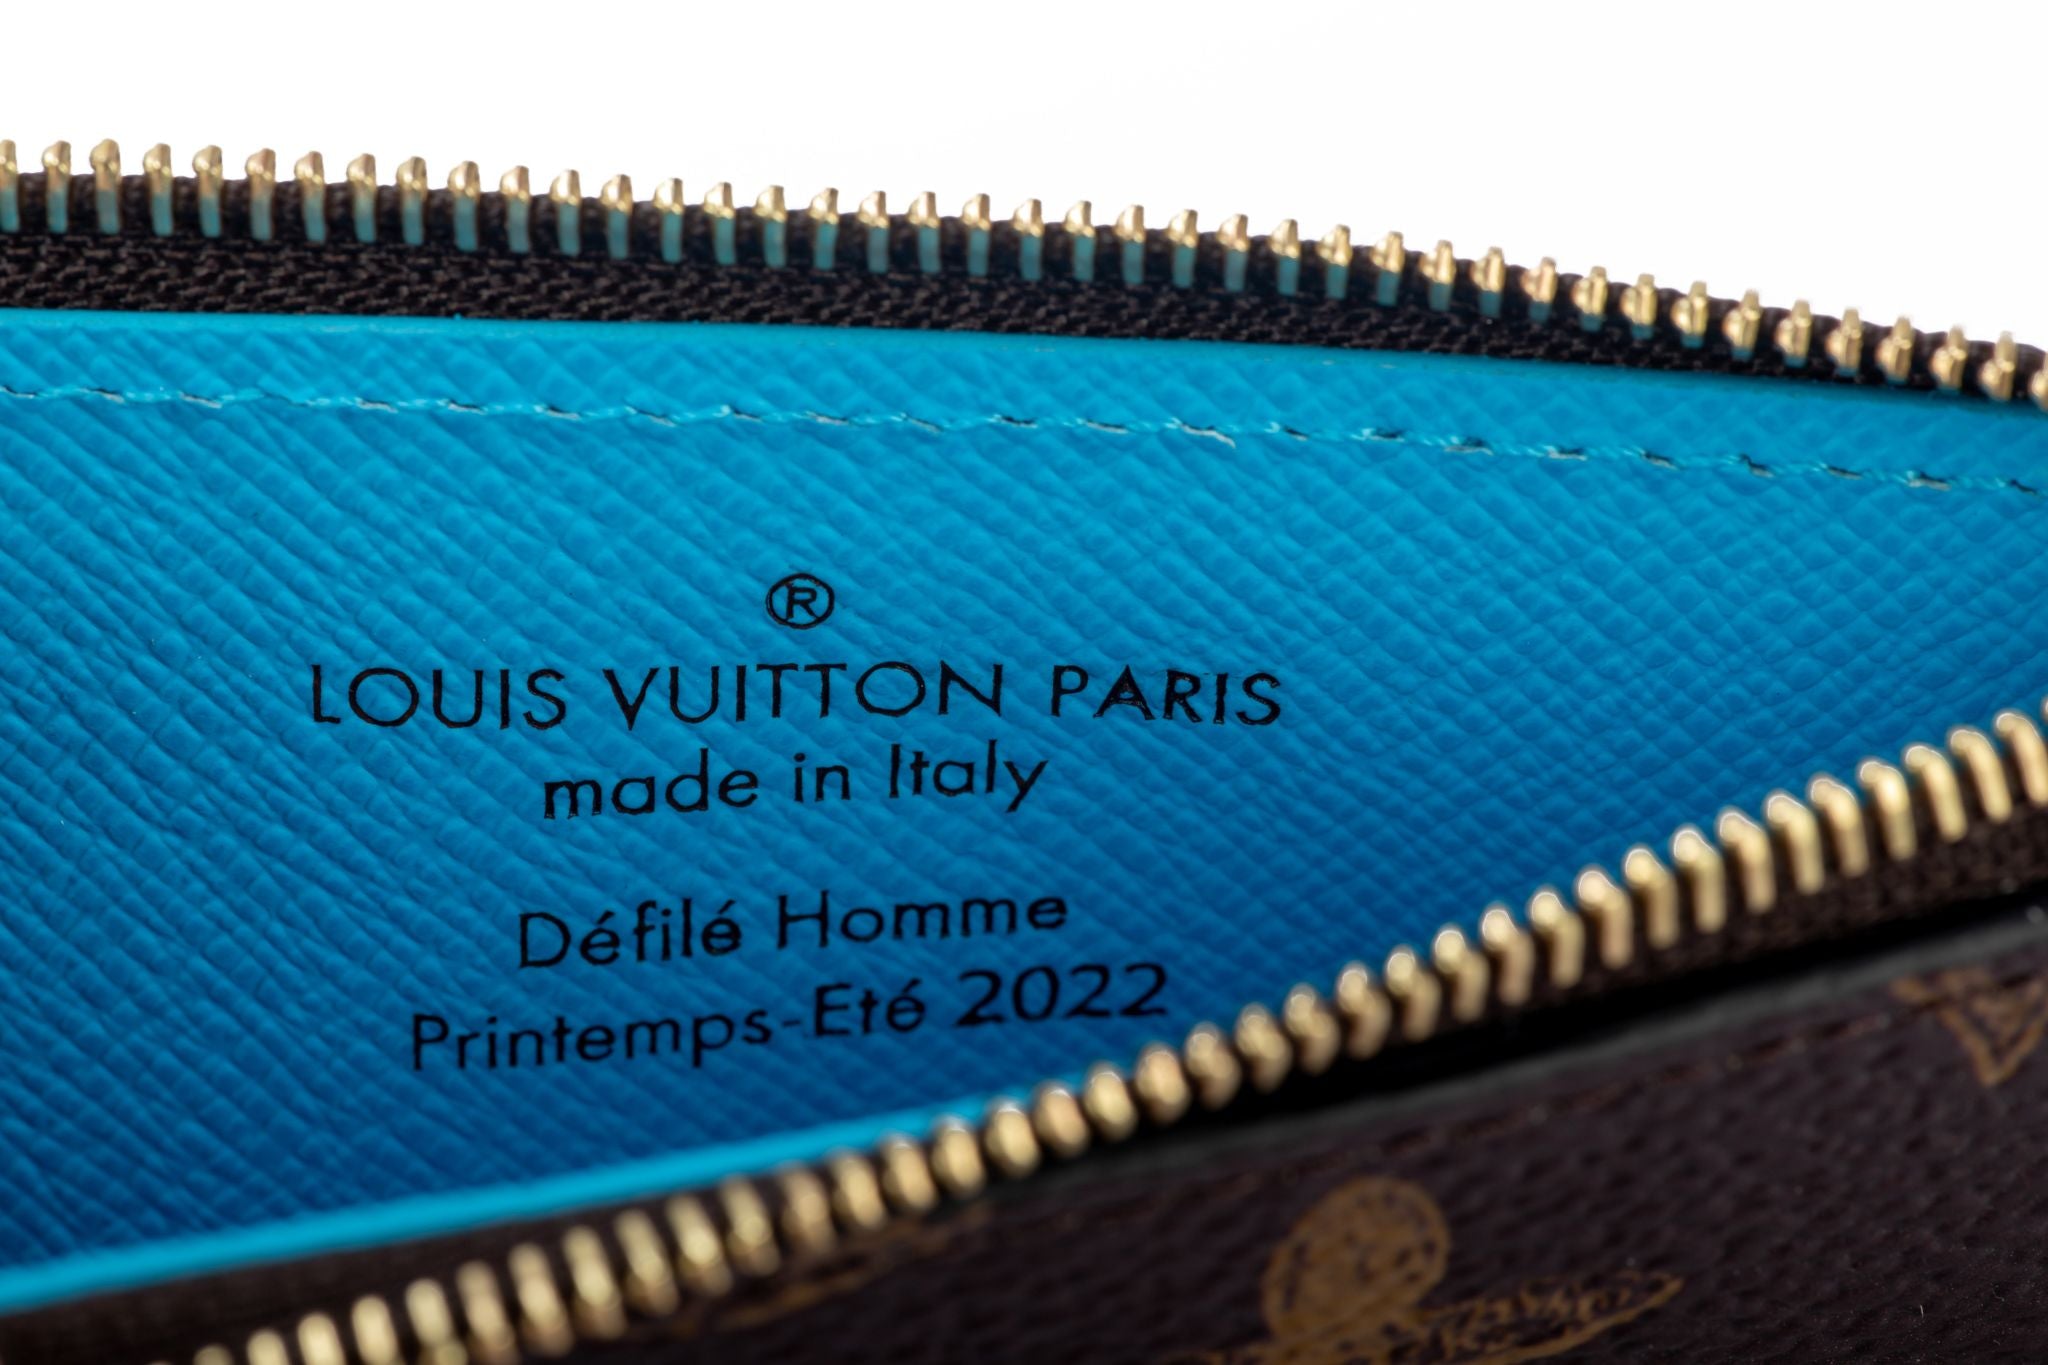 Louis Vuitton CC holder Virgil Abloh - Vintage Lux